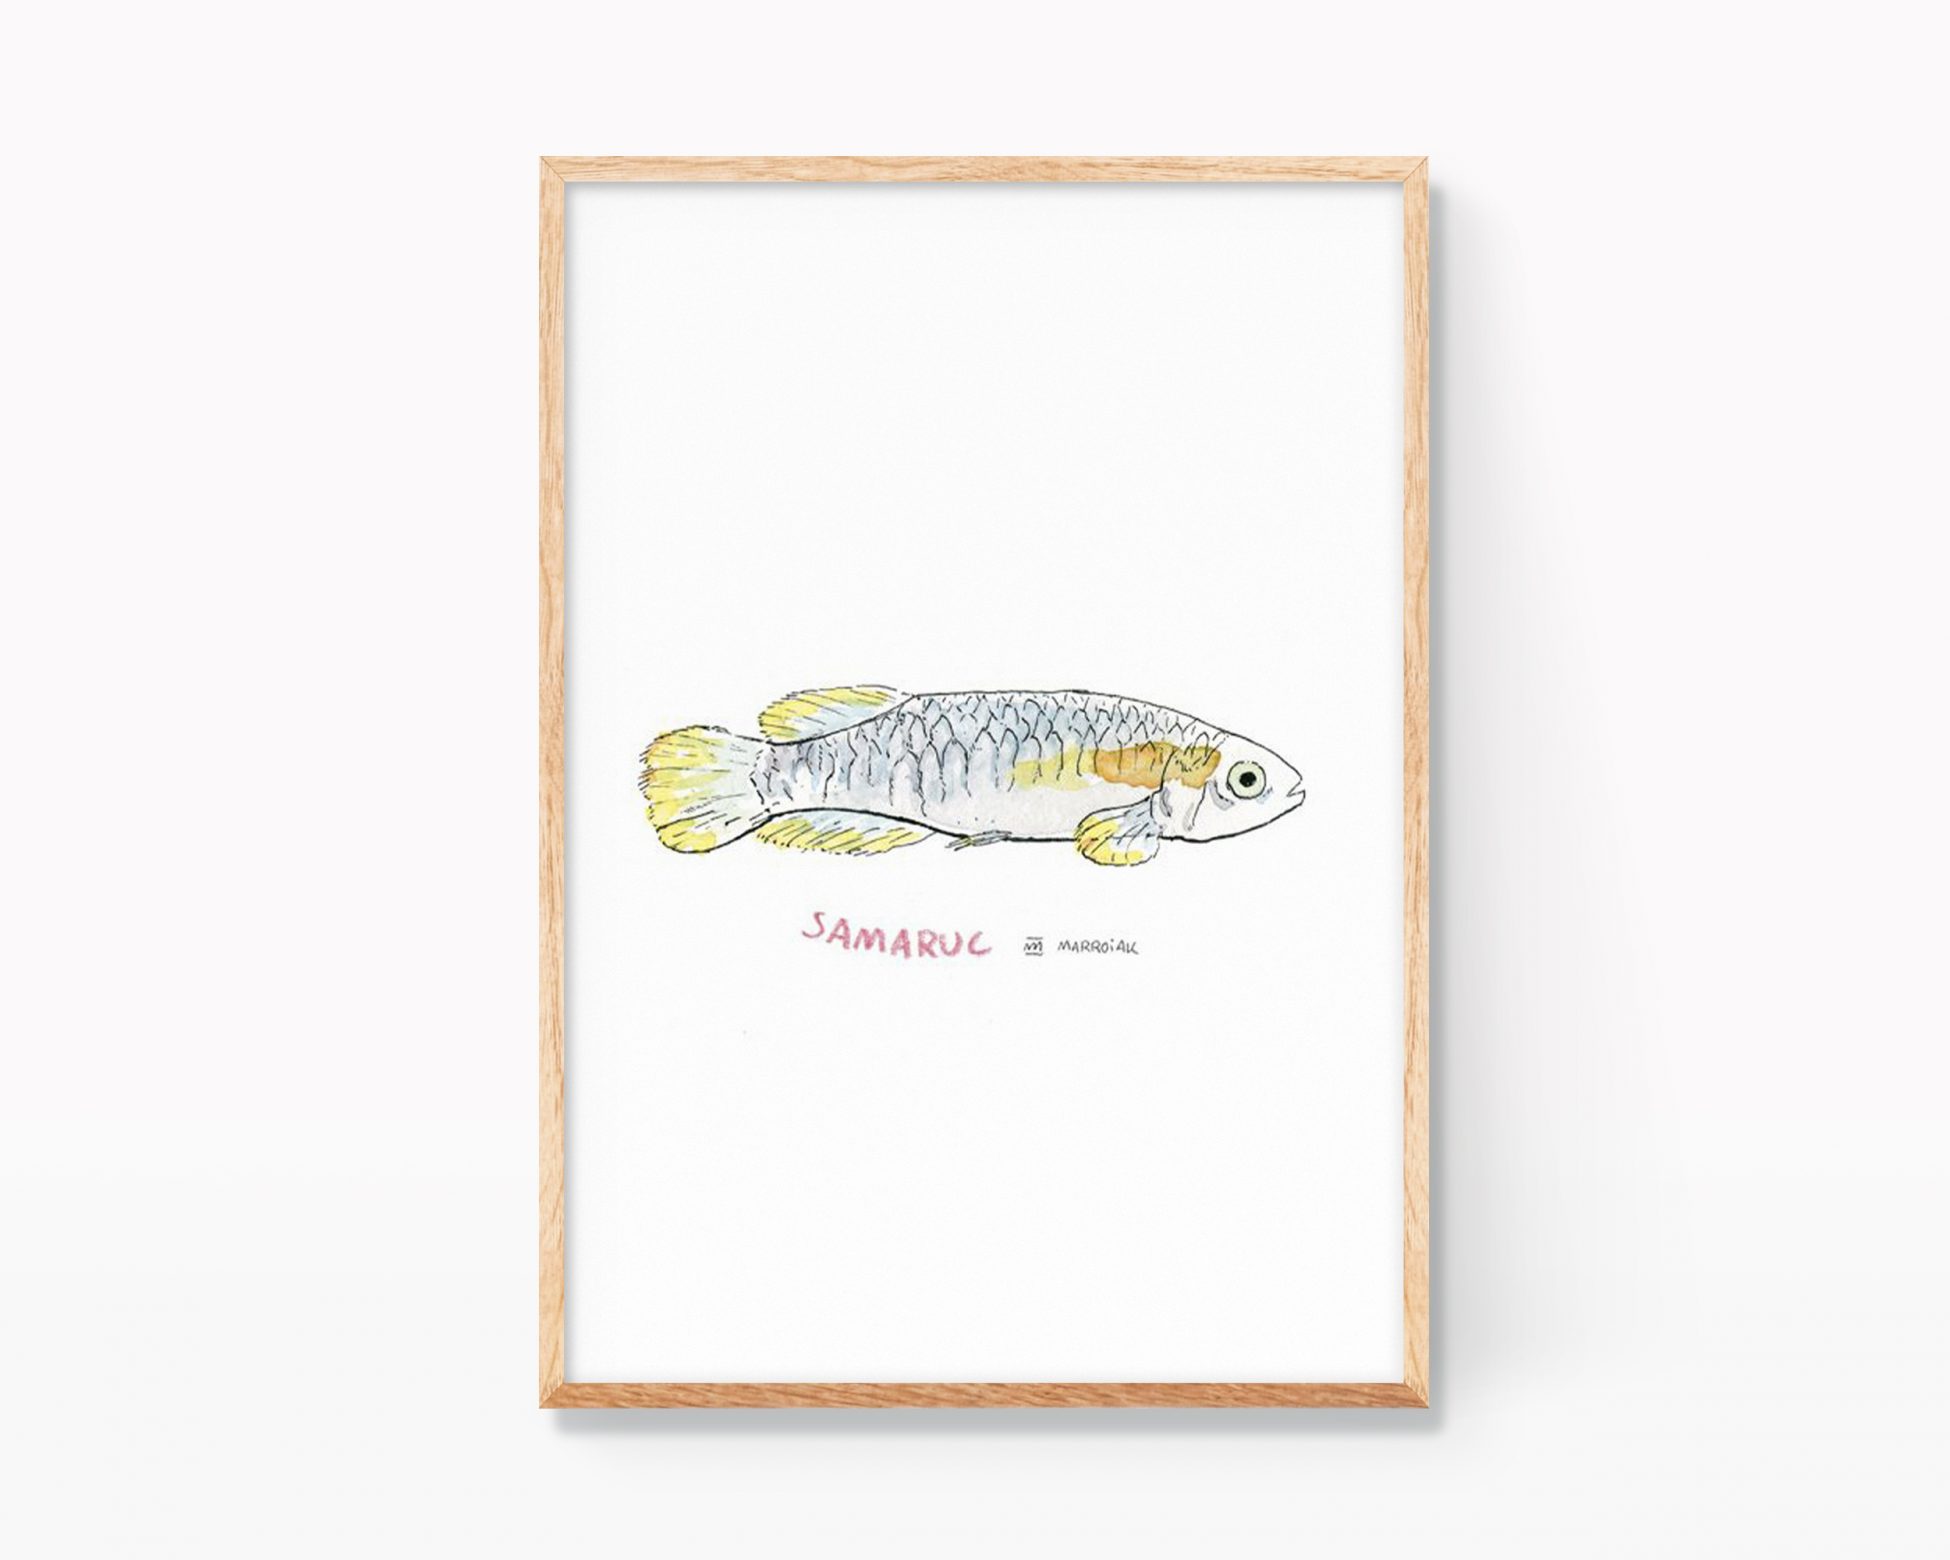 Cuadro decorativo con una ilustración de un pez samaruc. Dibujos para enmarcar decoración de animales y naturaleza